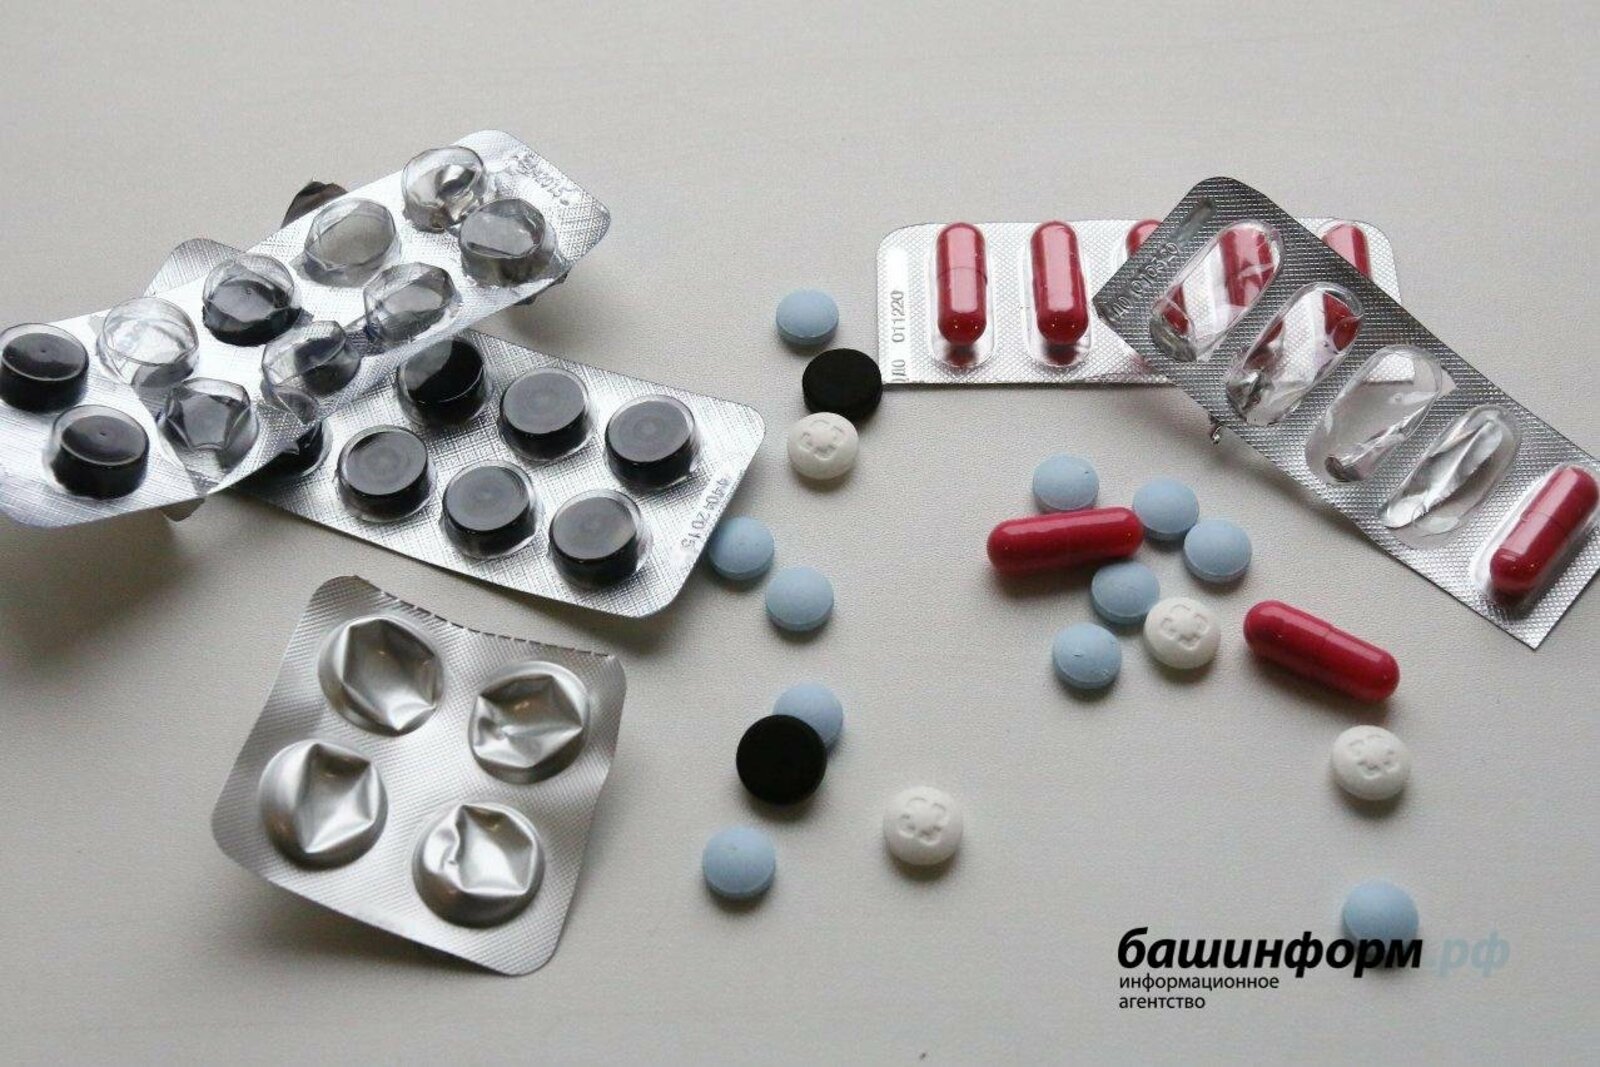 Минздрав: В Башкирии цены на жизненно важные лекарства не повысились